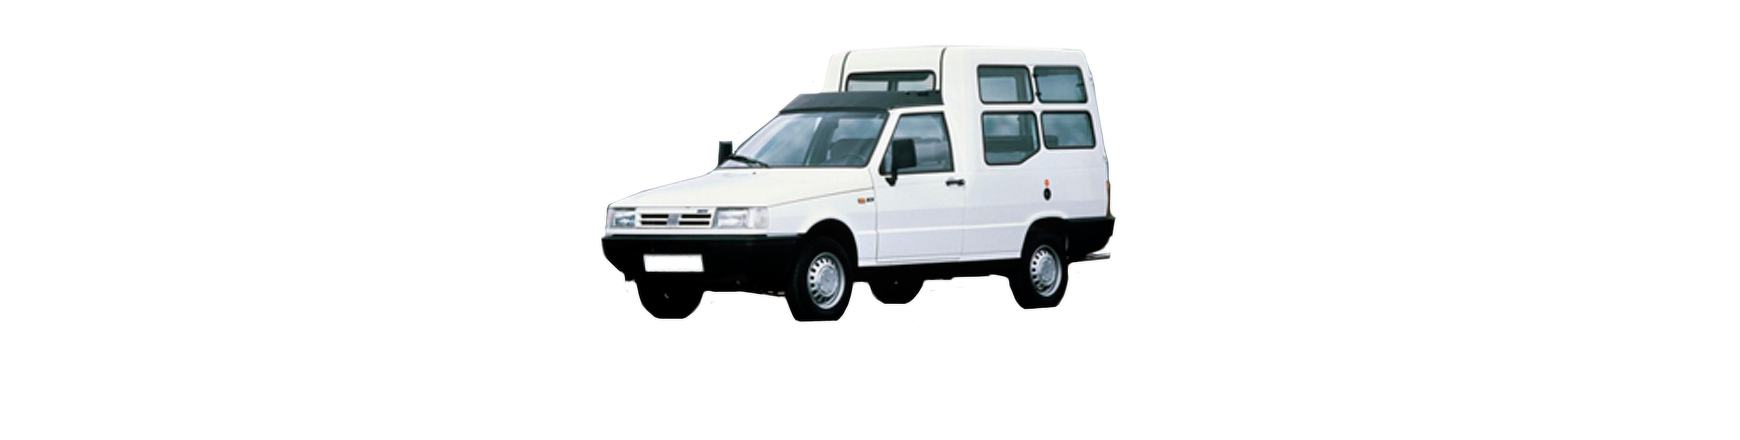 Recambios de Fiat Fiorino de 1991, 1992, 1993, 1994, 1995 y 1996.